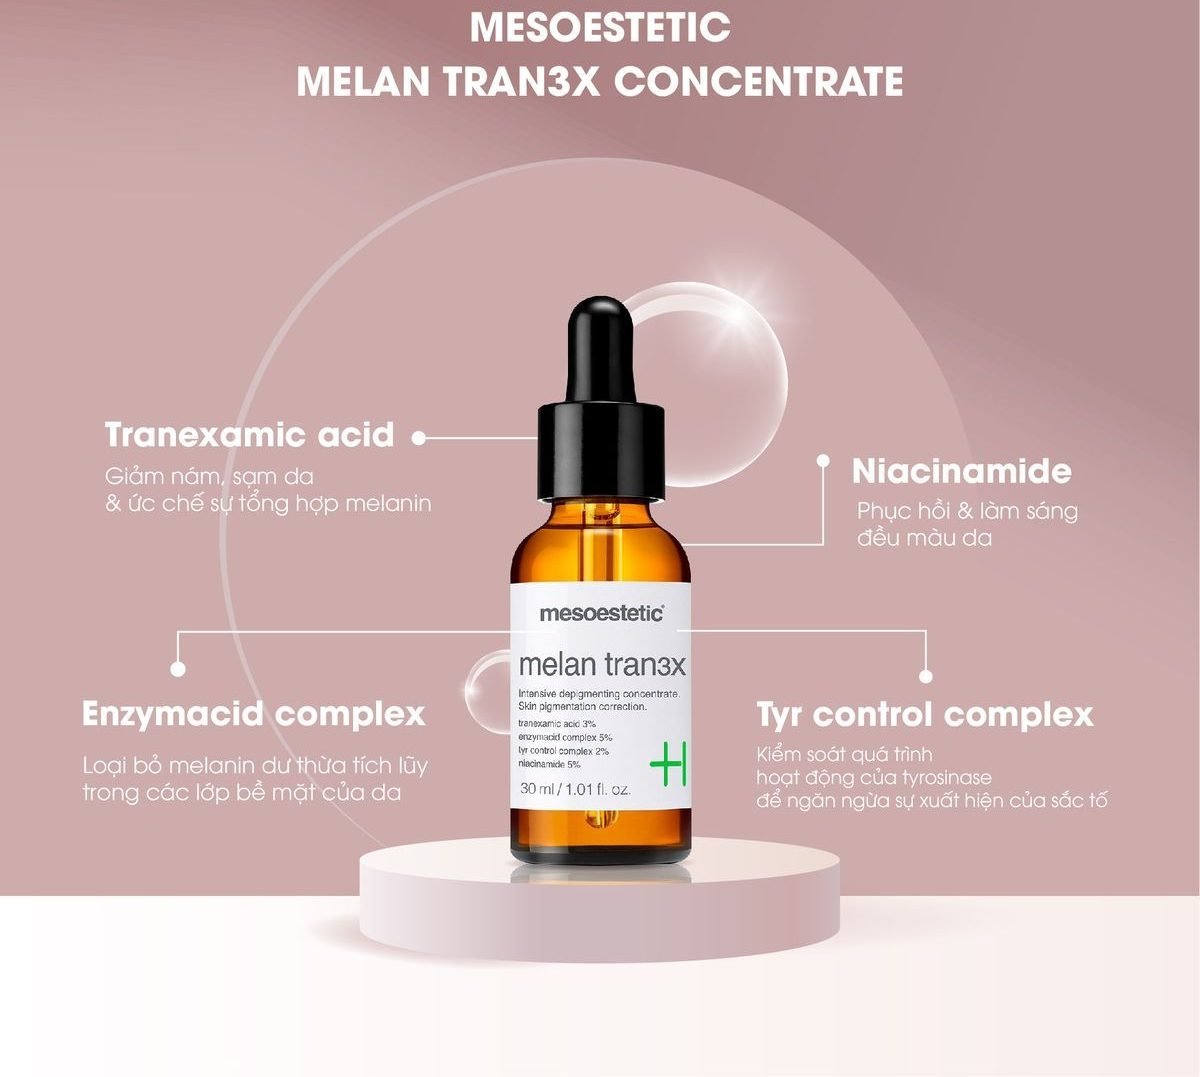 Melan Tran3x Concentrate gồm những thành phần đặc trị nồng độ cao, có tác dụng khử nám chuyên sâu